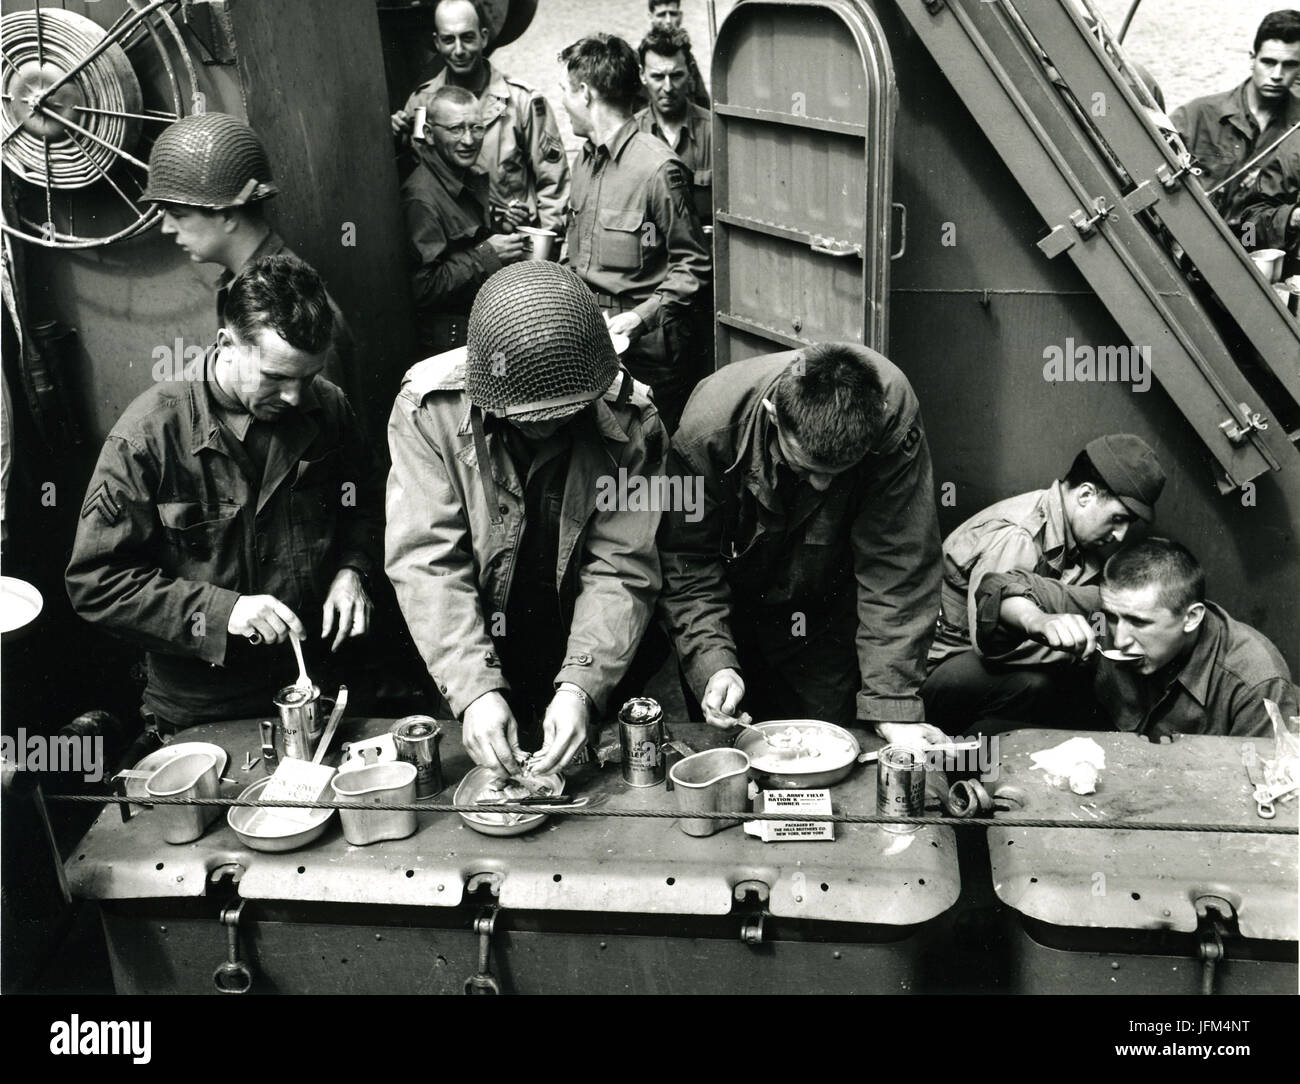 Überqueren den Ärmelkanal an Bord einer Küstenwache "Elsie" (oder LCI), amerikanische Soldaten fangen ihre K-Rationen und Sellerie-Suppe von der Spitze einer 20 mm-Box bereit. Vor uns liegt die Küste von Frankreich, aber für den Moment Chow ist das wichtigste. Sie können nicht auf einem hohlen Bauch kämpfen. 6. Juni 1944 Stockfoto